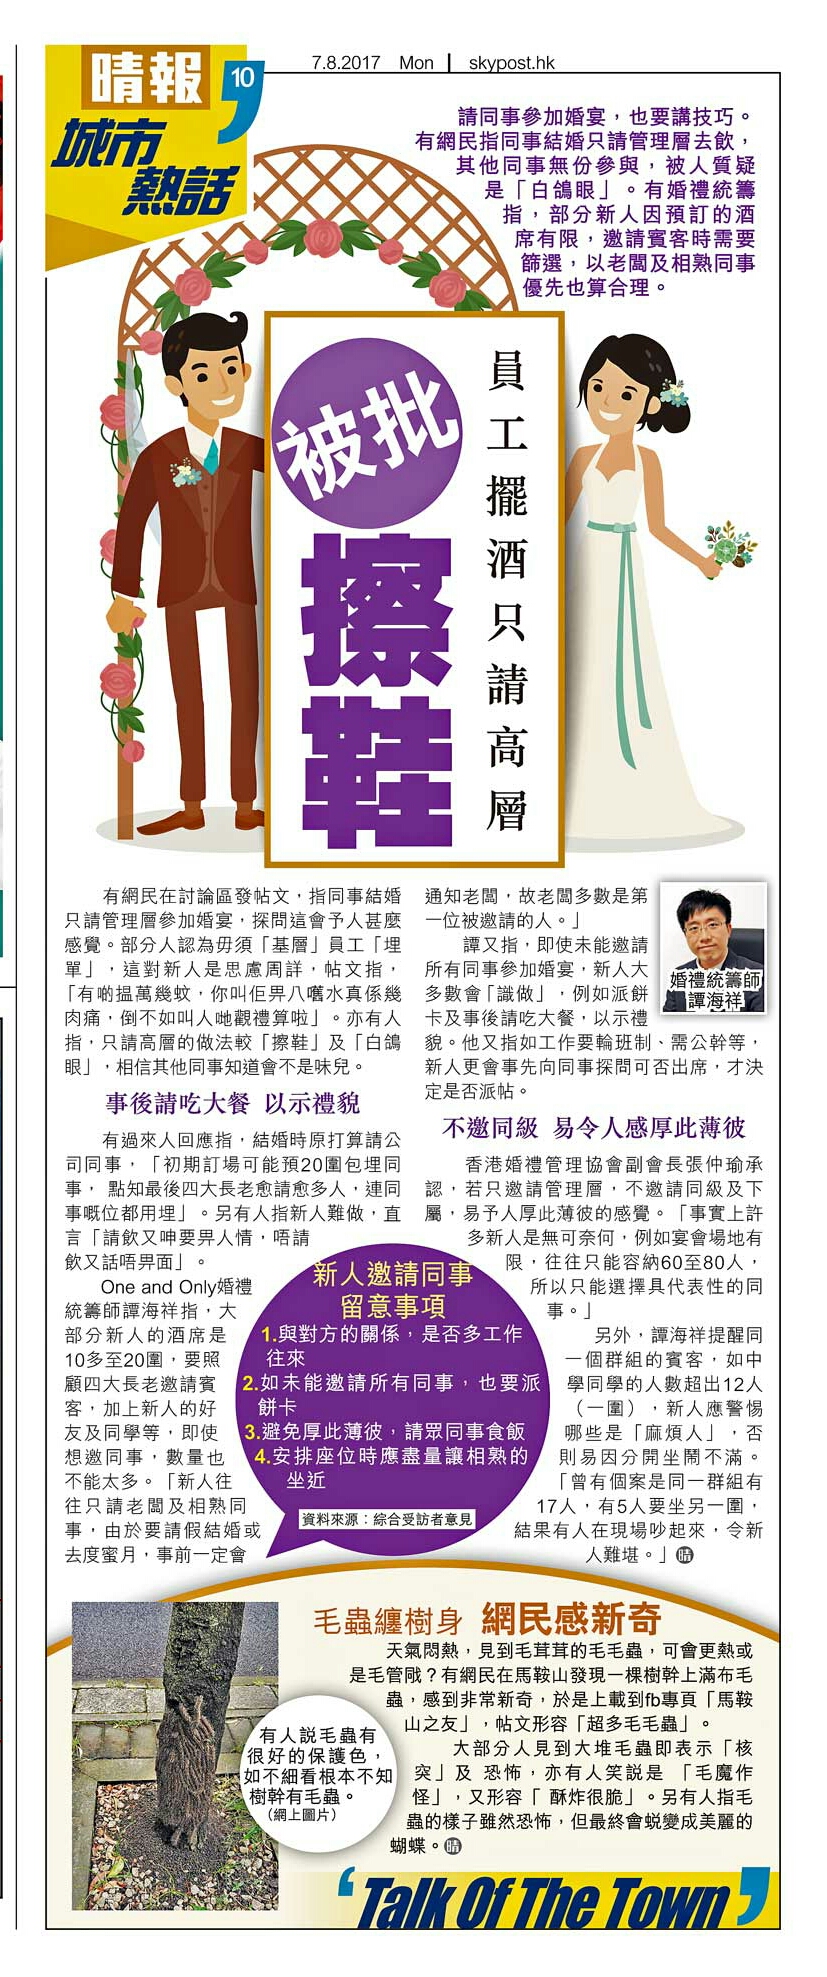 譚海祥Billy Tam 婚禮統籌師傳媒報導: 員工擺酒只請高層 被批擦鞋